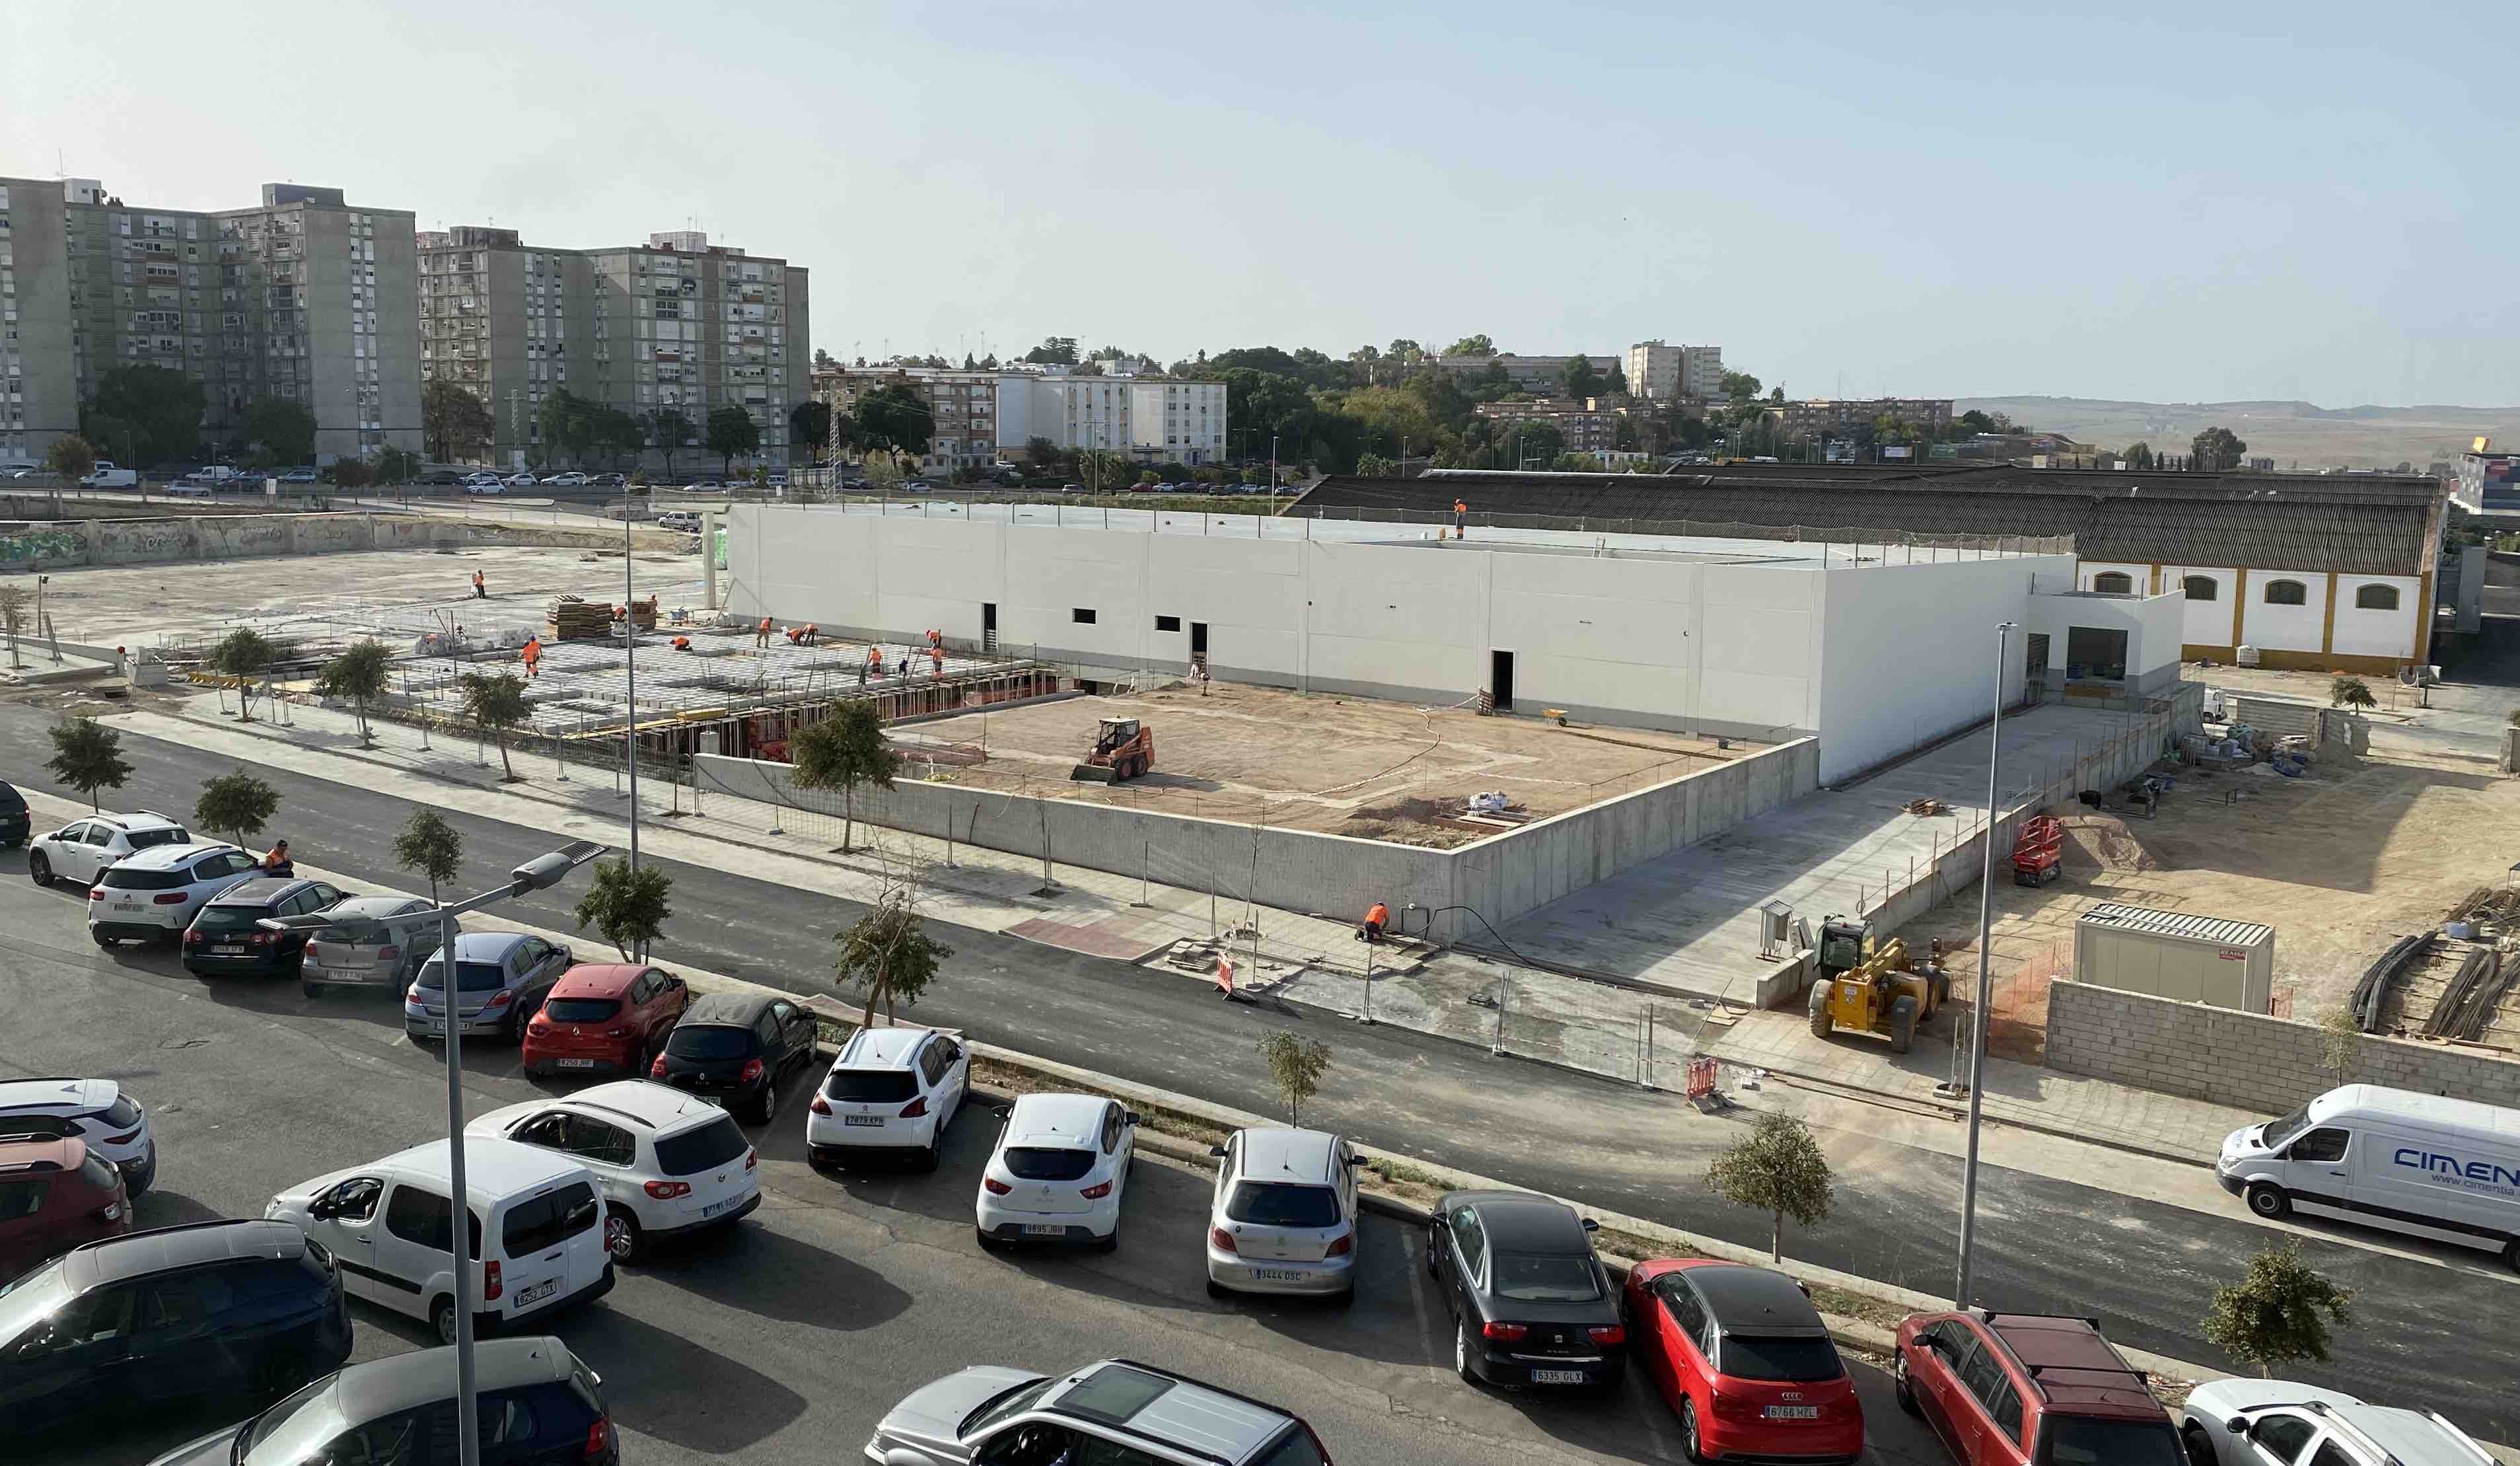 El gigante alemán invierte 1,3 millones de euros en el que será su tercer supermercado en Jerez, en terrenos donde se proyectó el fallido Palacio de Congresos.